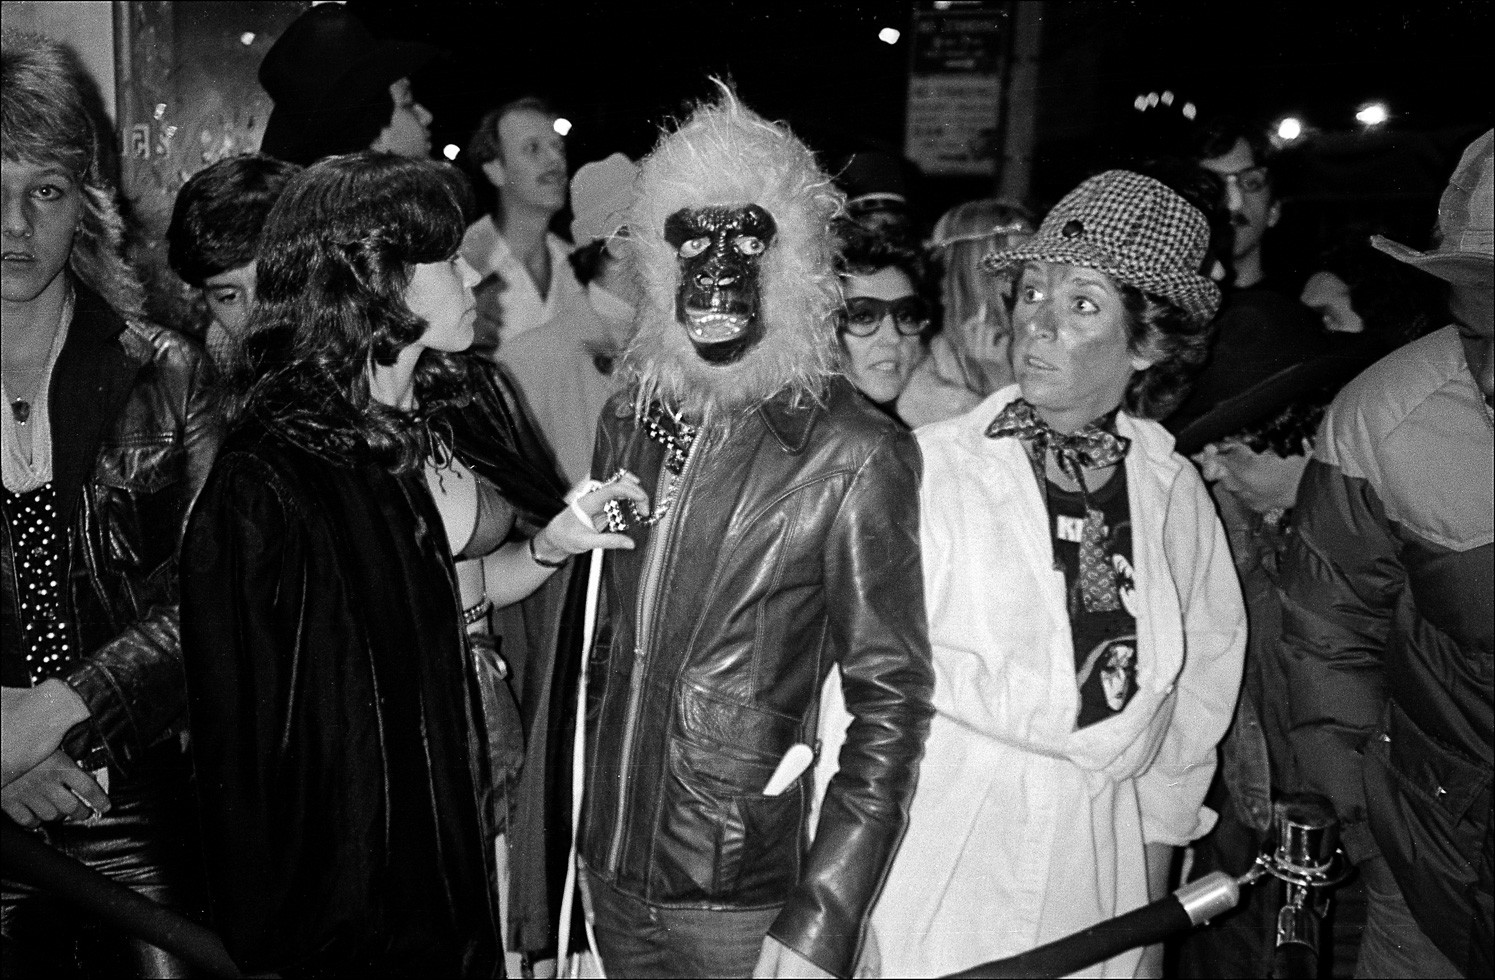 Посетители в костюмах ждут допуска на вечеринку в честь Хэллоуина в Студия 54. Фотограф Аллан Танненбаум